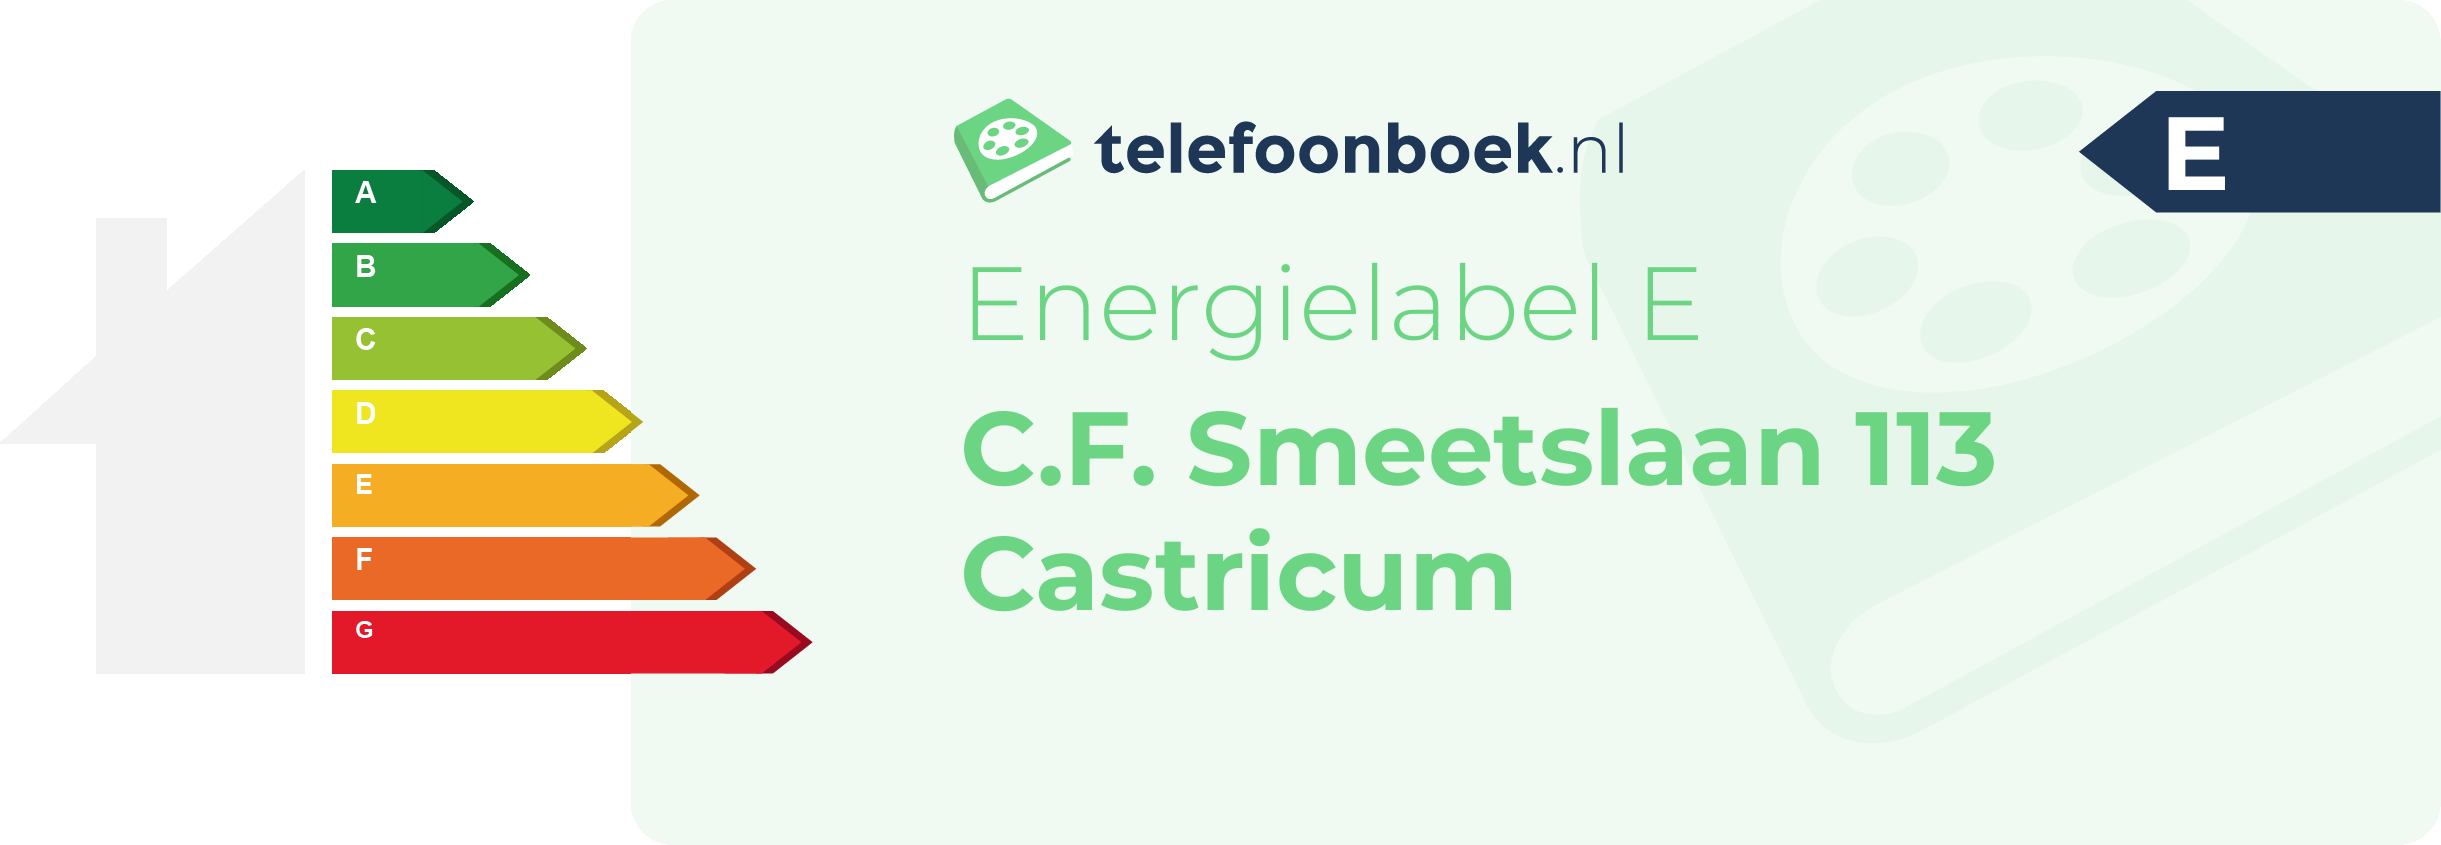 Energielabel C.F. Smeetslaan 113 Castricum